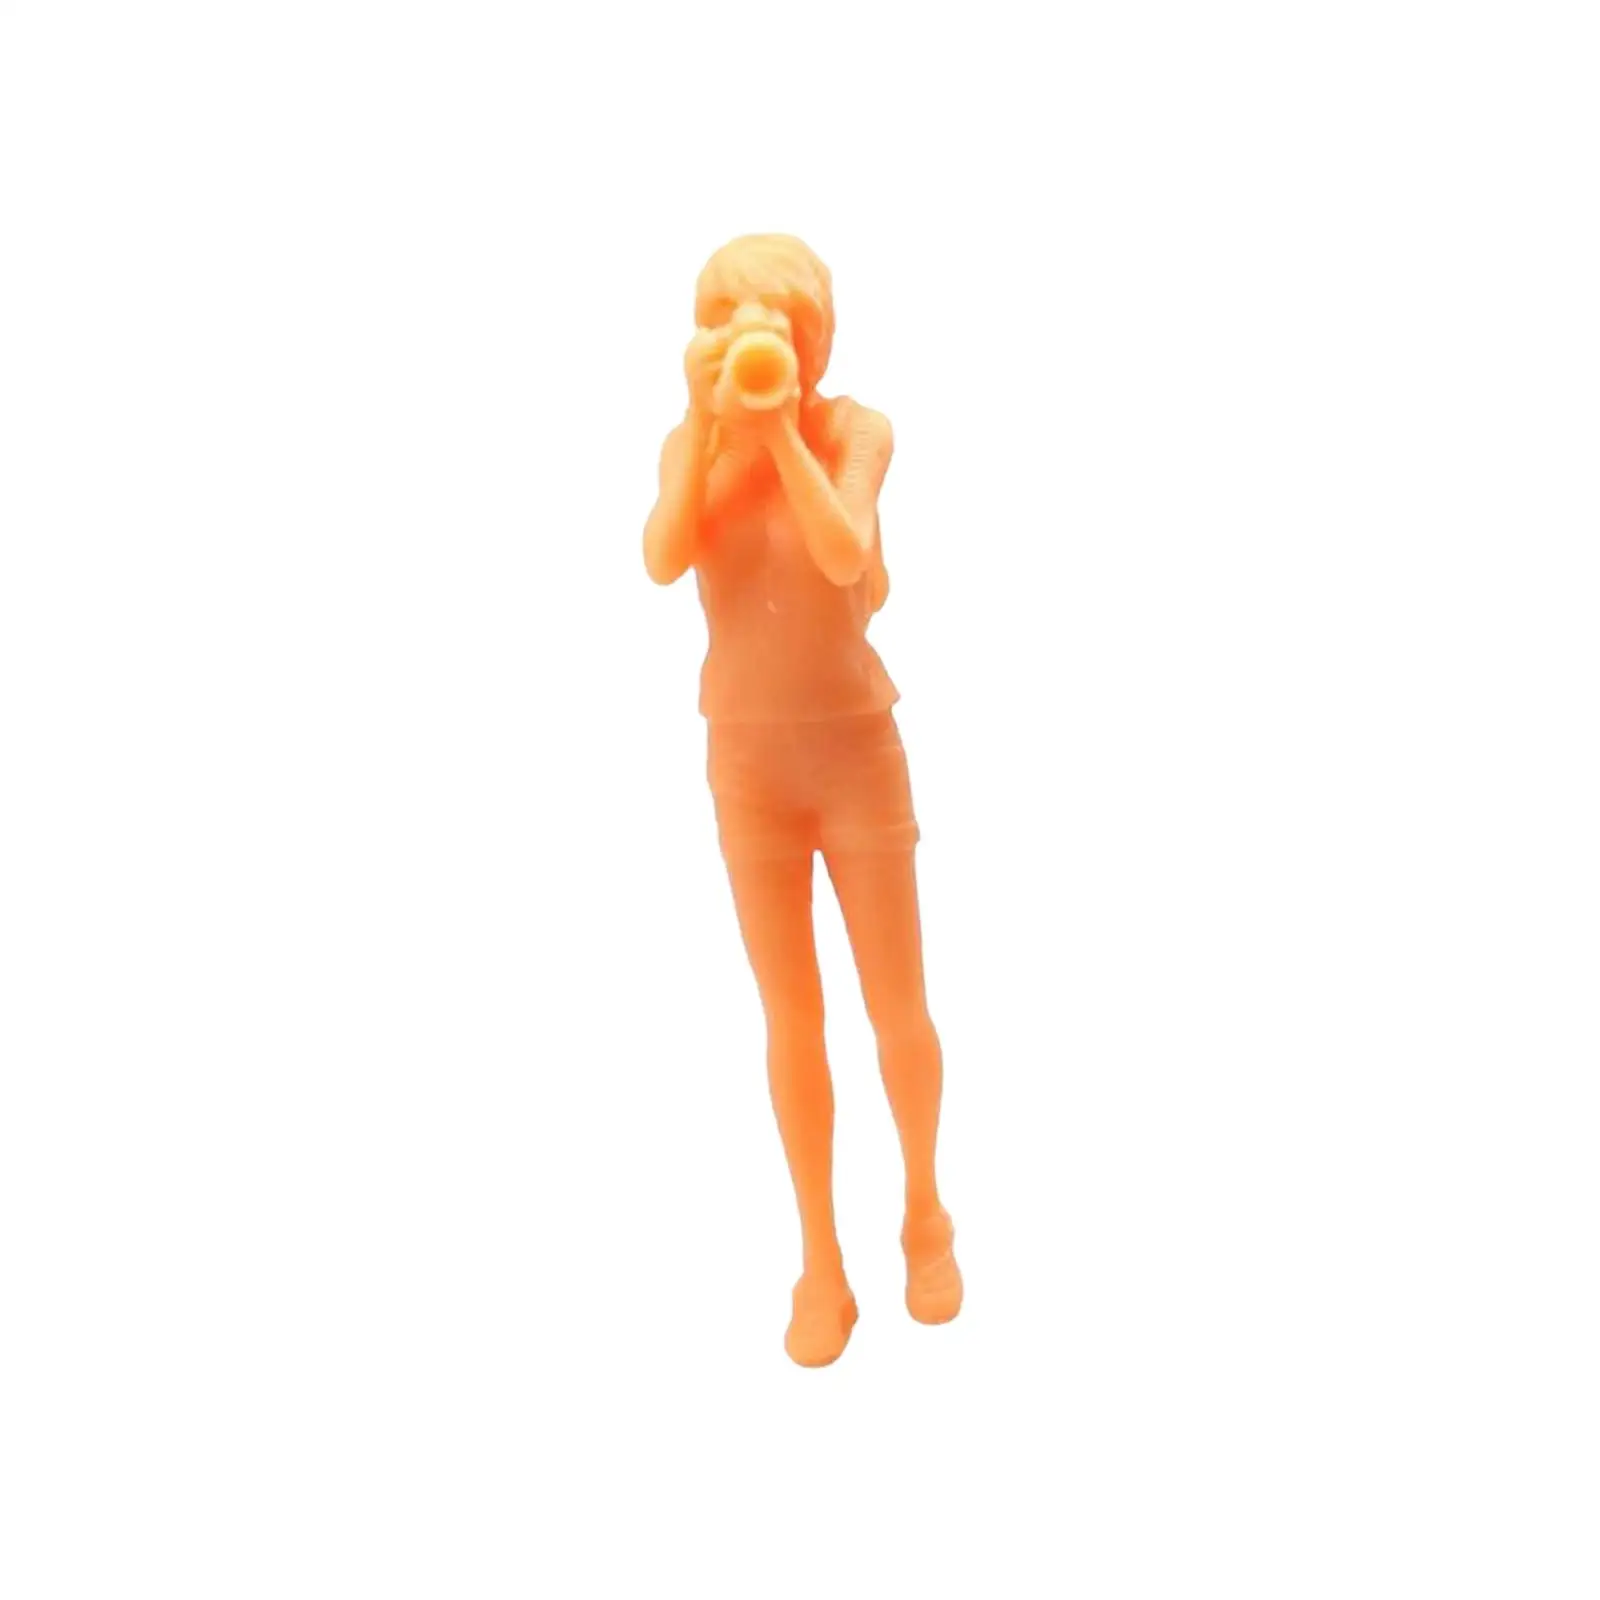 Resin 1/64 Scale Figures Realistic Figures Simulation Figurines 1/64 Scale Figures Diorama Layout Miniature Scenes Decor